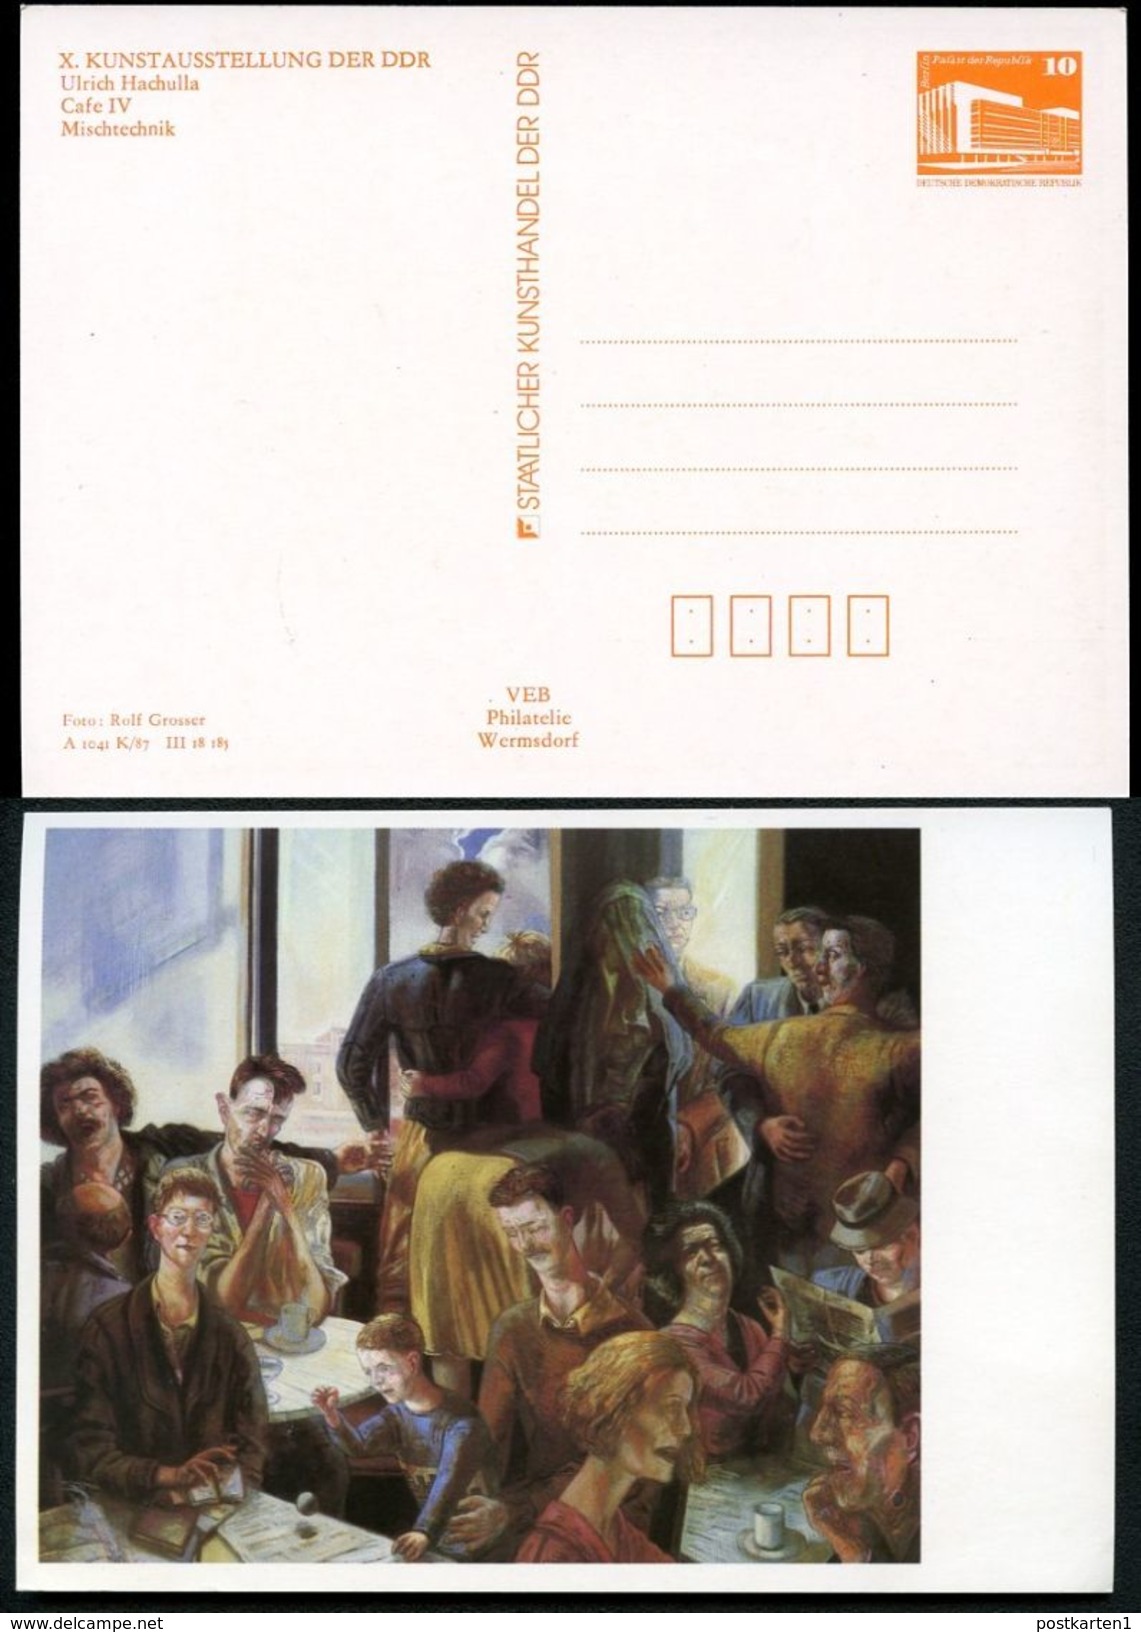 DDR Privat-Postkarte PP19 B1/012-1b KUNSTAUSSTELLUNG DRESDEN 1987  NGK 3,00 € - Privatpostkarten - Ungebraucht